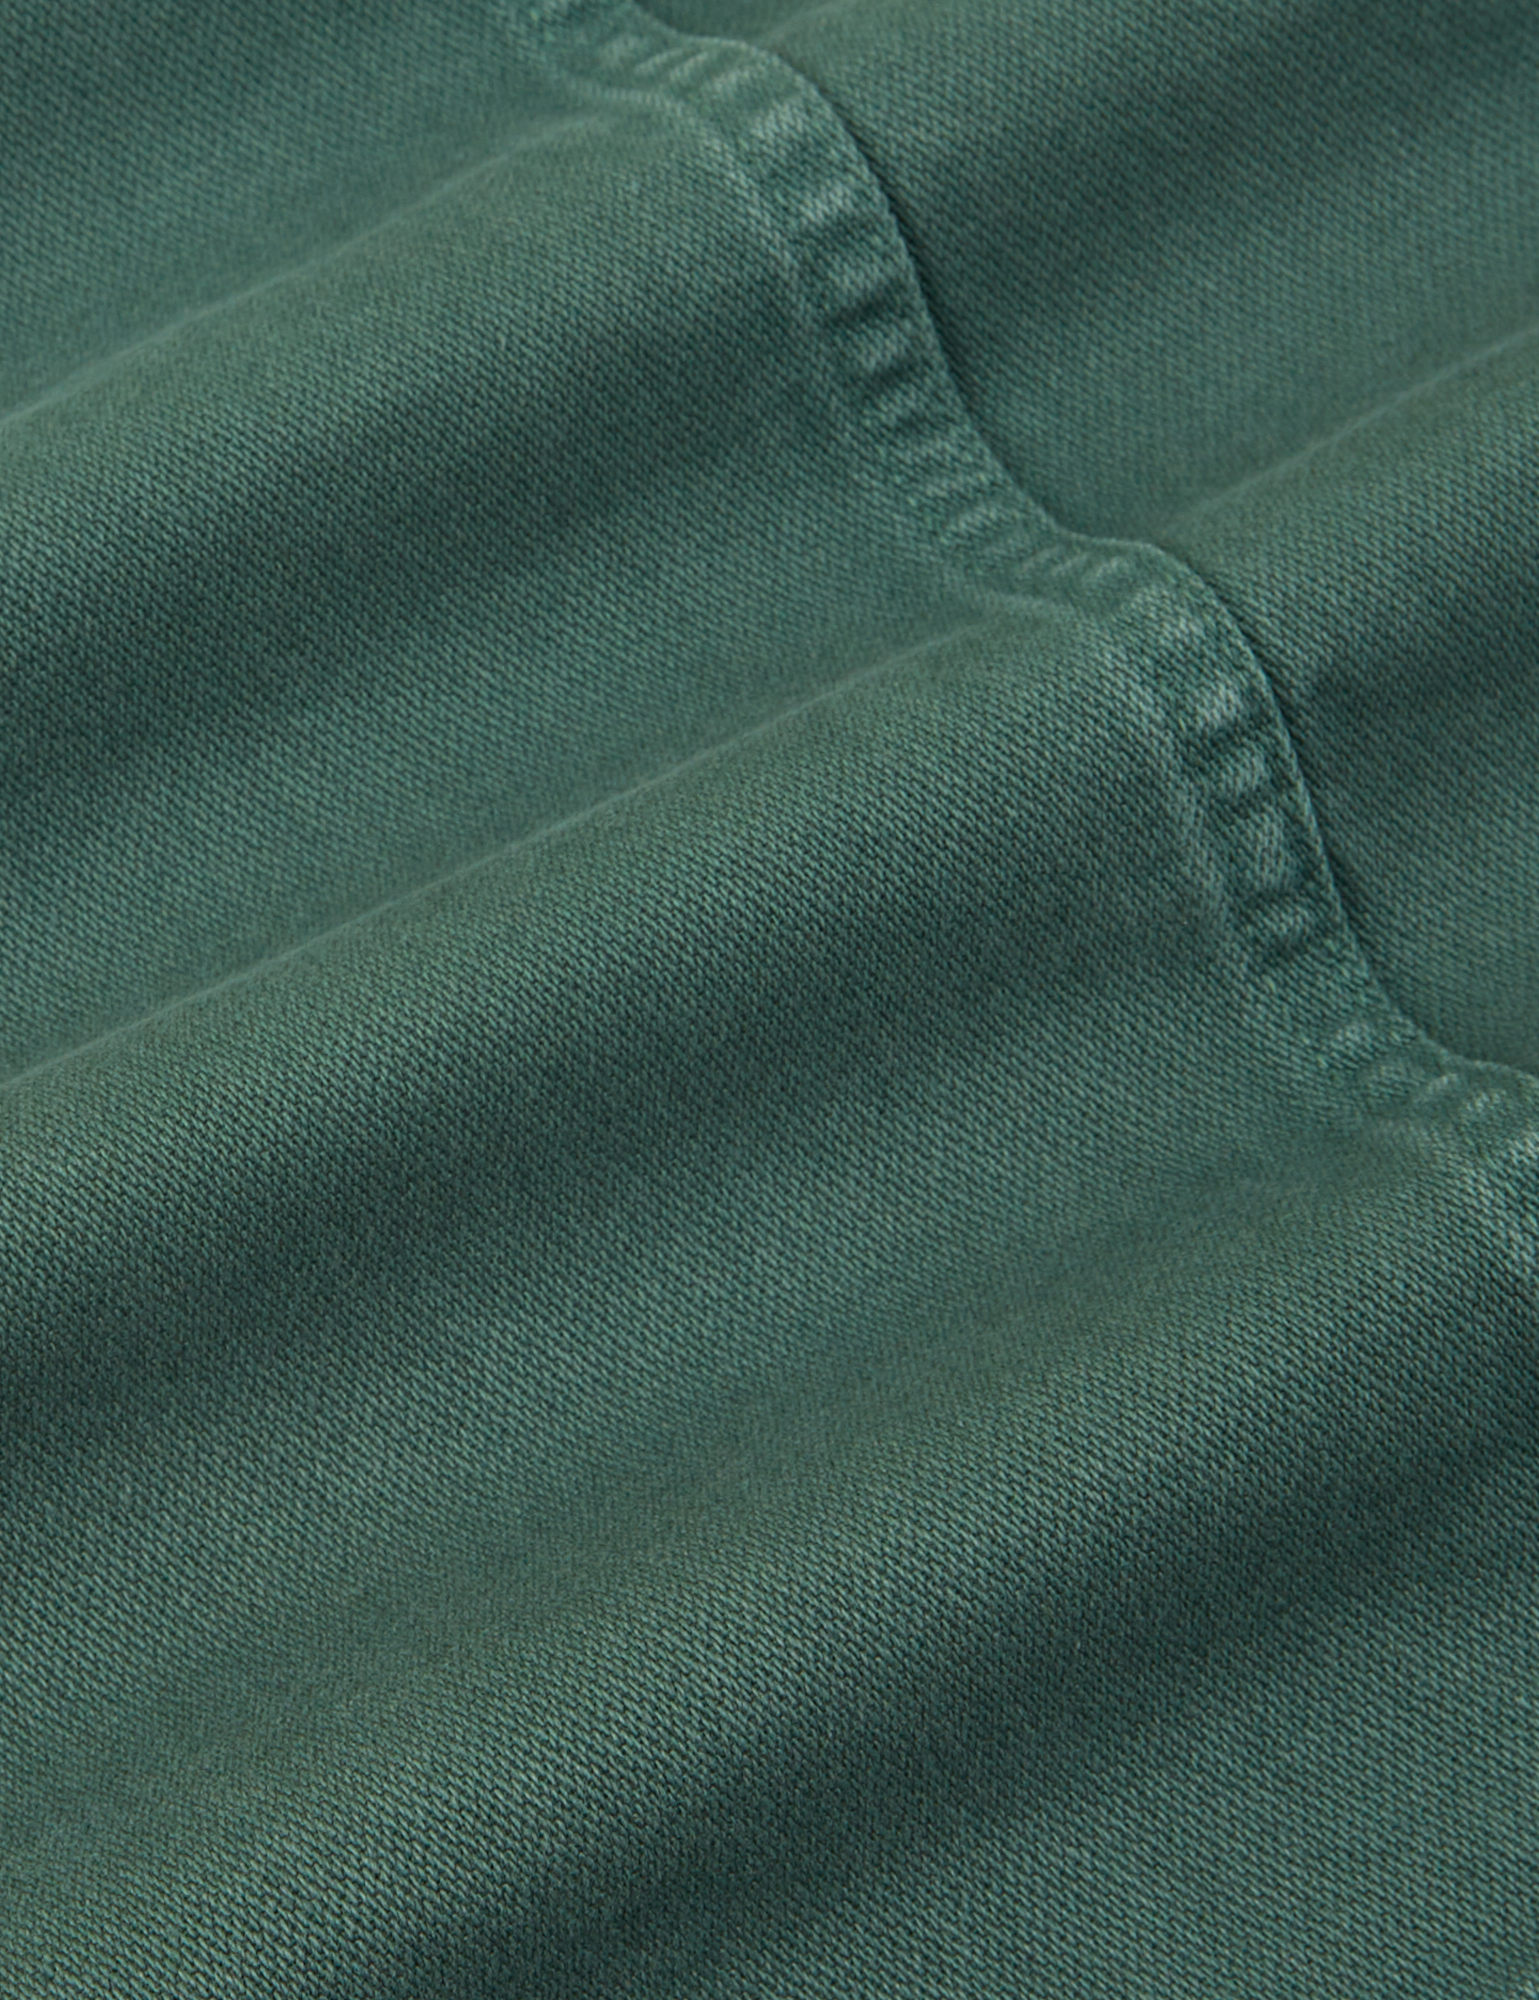 Denim Work Jacket in Dark Emerald Green fabric detail